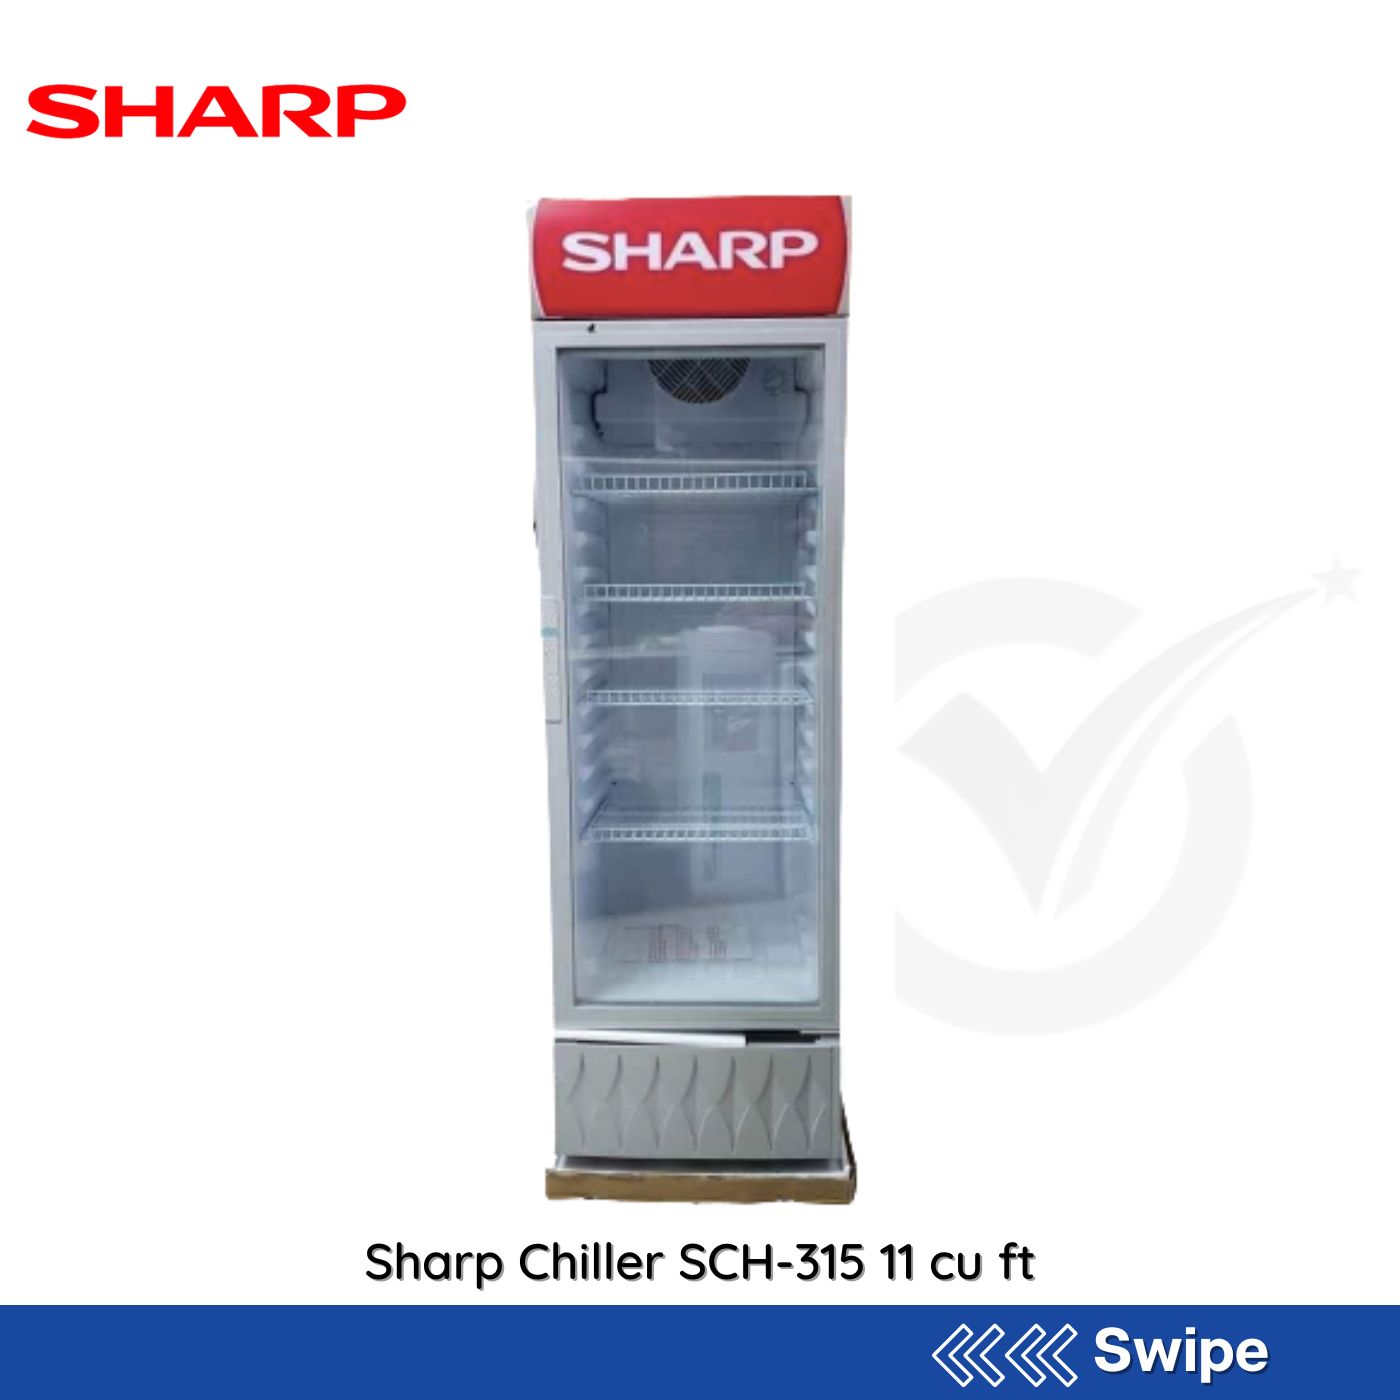 Sharp Chiller SCH-315 11 cu ft